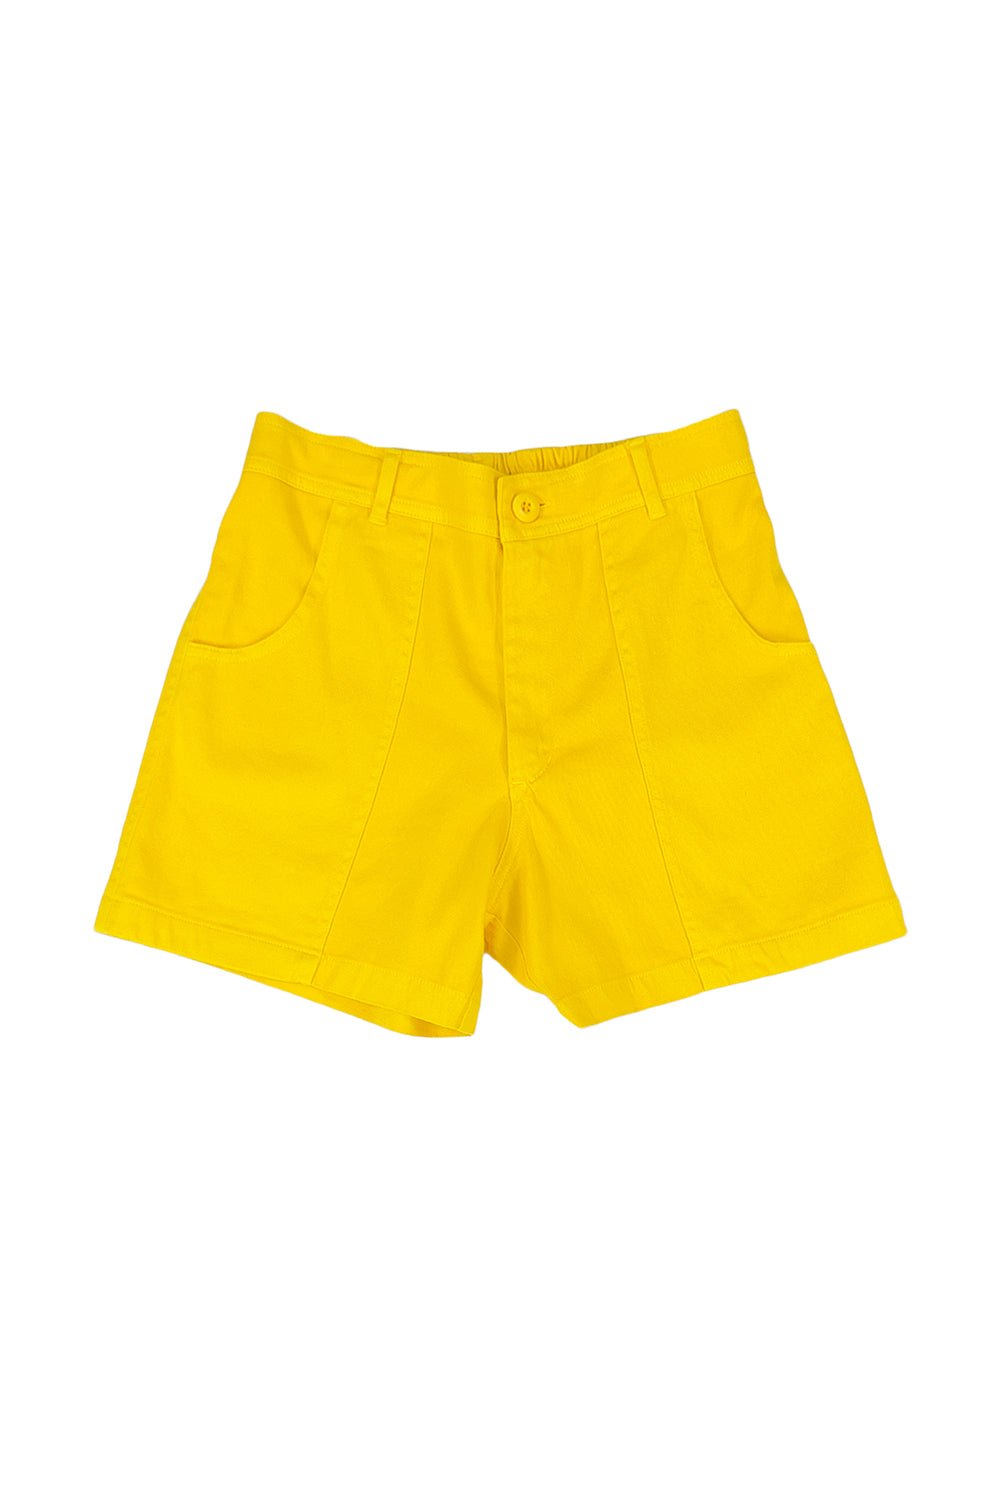 Venice Short - Sale Colors | Jungmaven Hemp Clothing & Accessories / Color: Sunshine Yellow